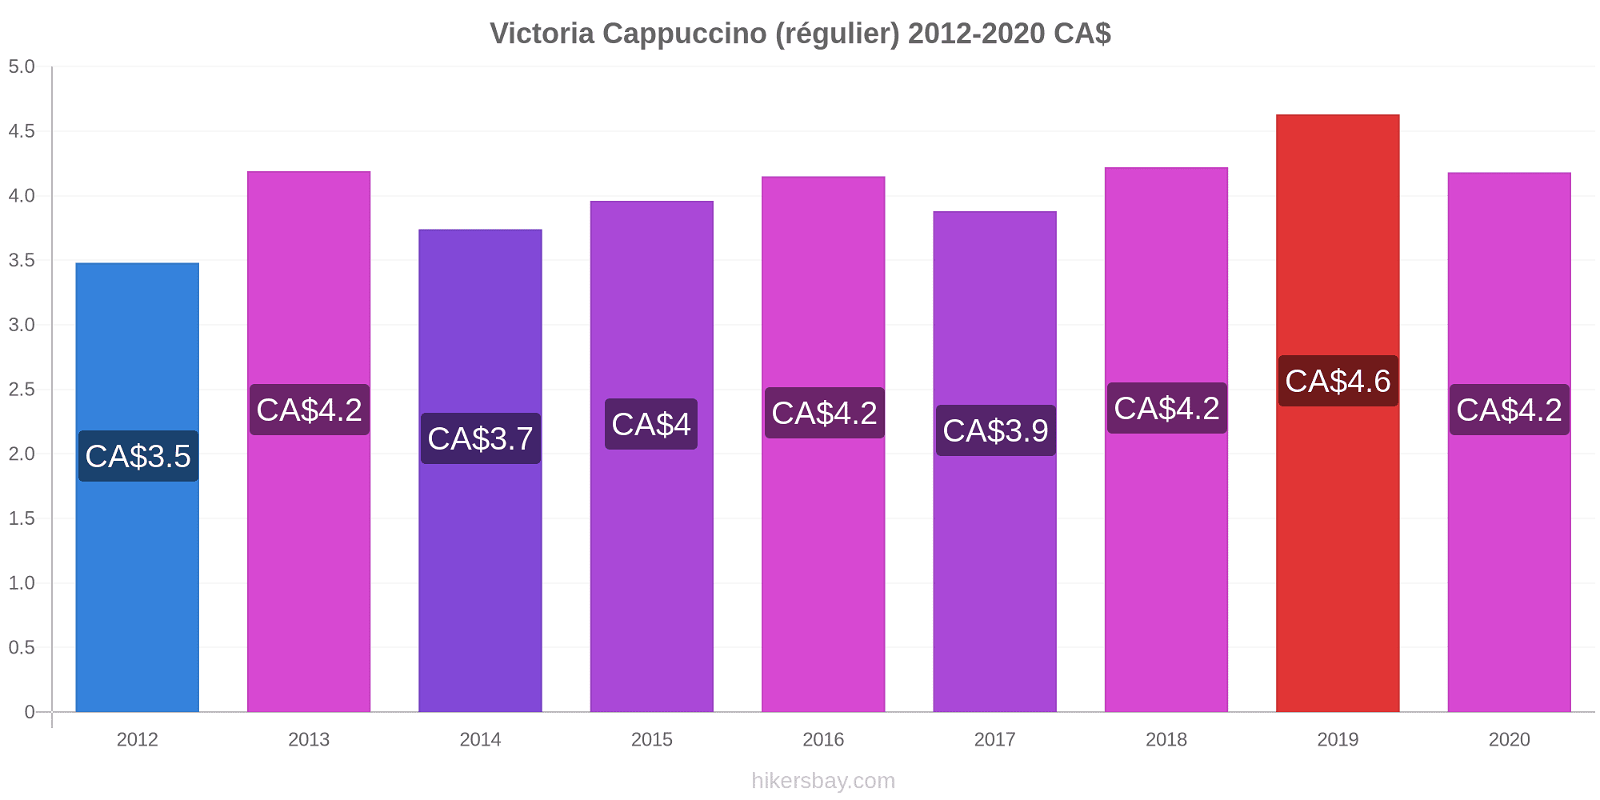 Victoria changements de prix Cappuccino (régulier) hikersbay.com